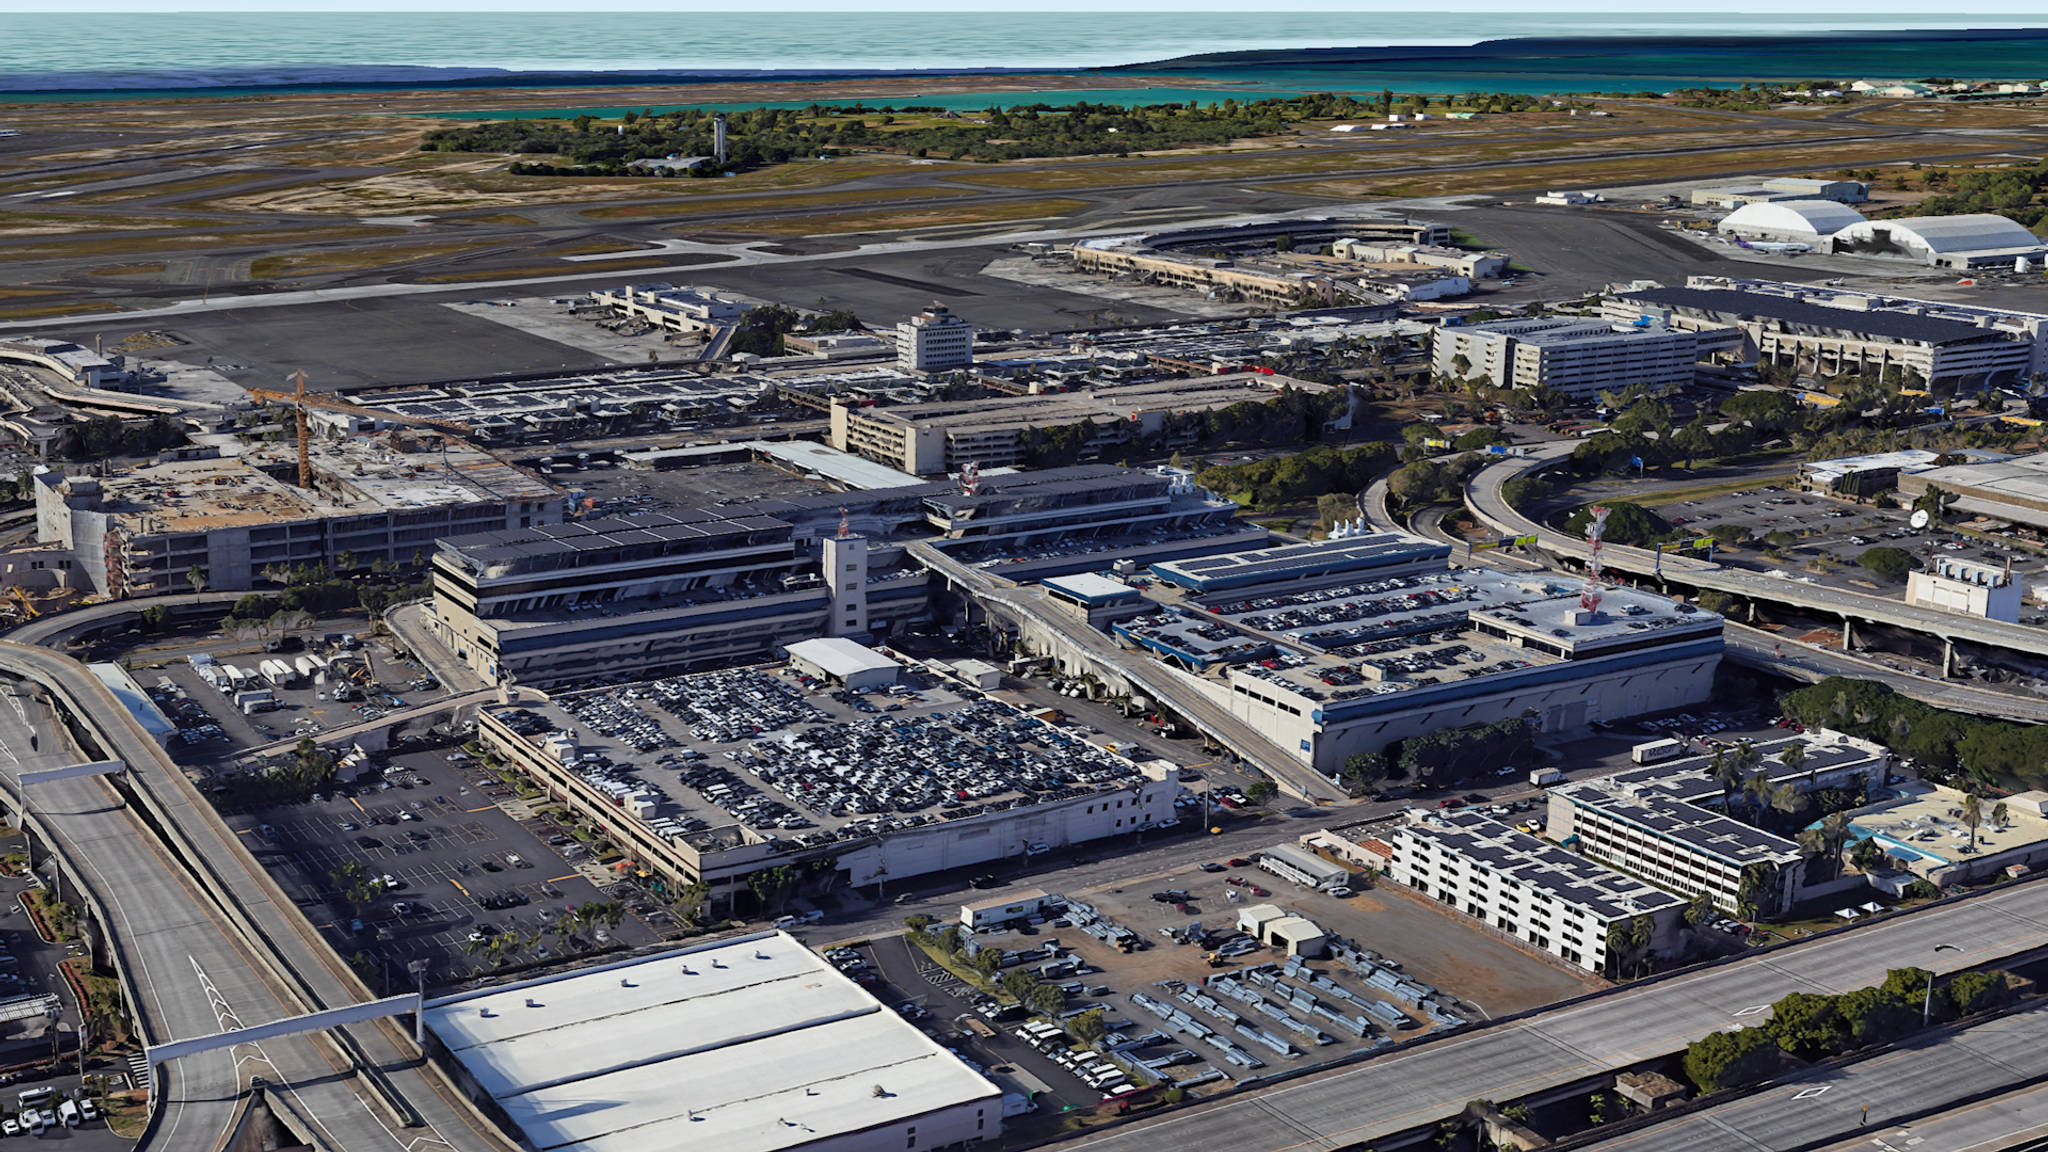  Aerial View of Honolulu Airport Parking